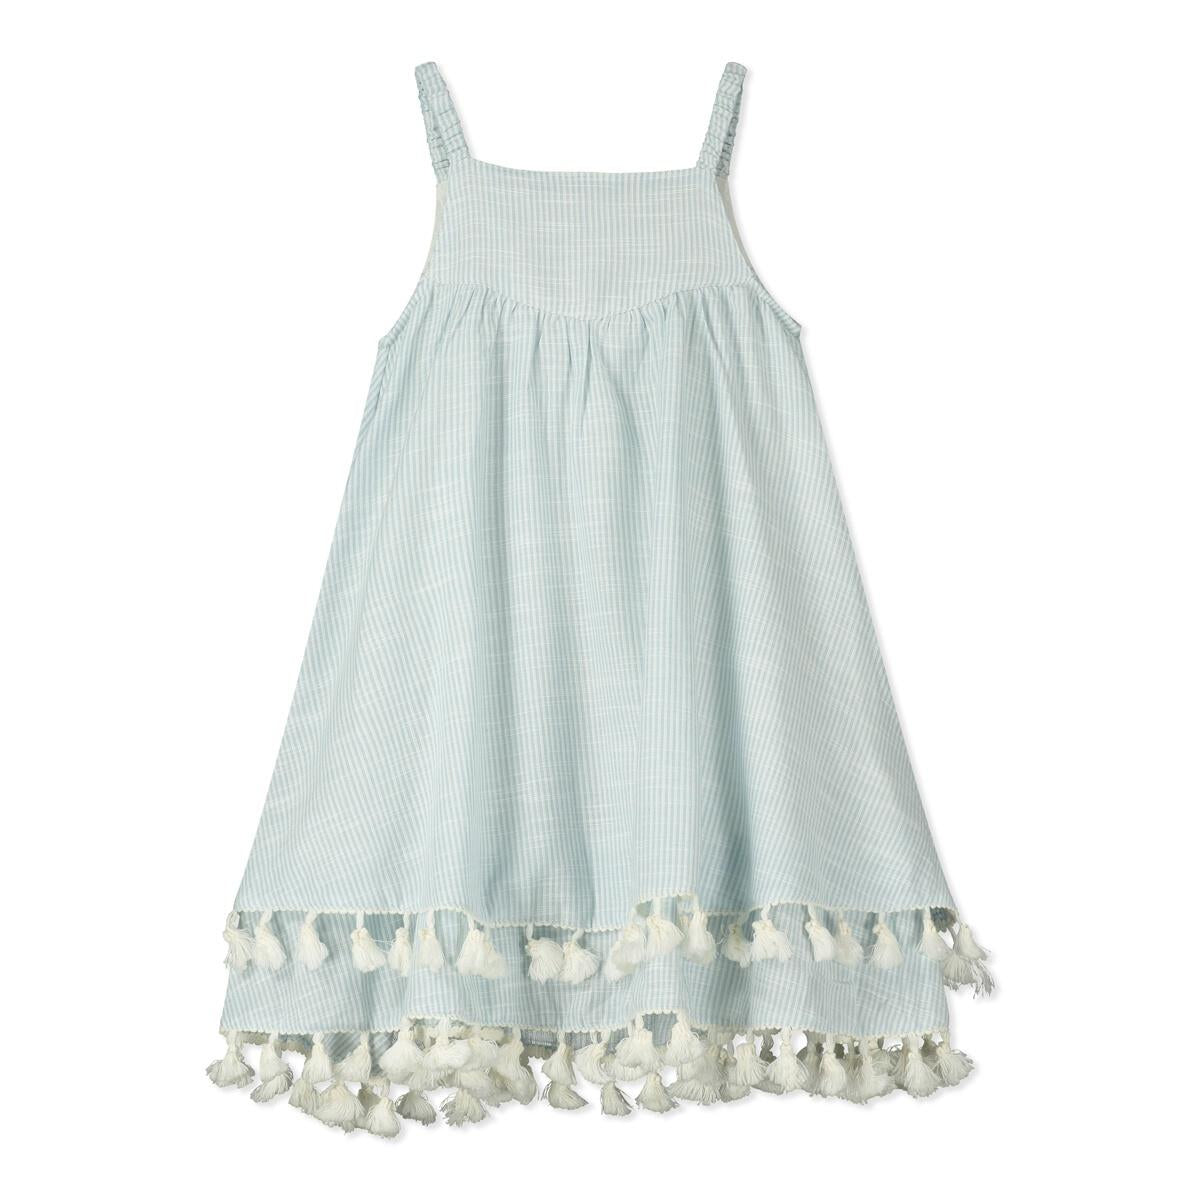 Santorini Blue & White Woven Tassel Dress - Twinkle Twinkle Little One